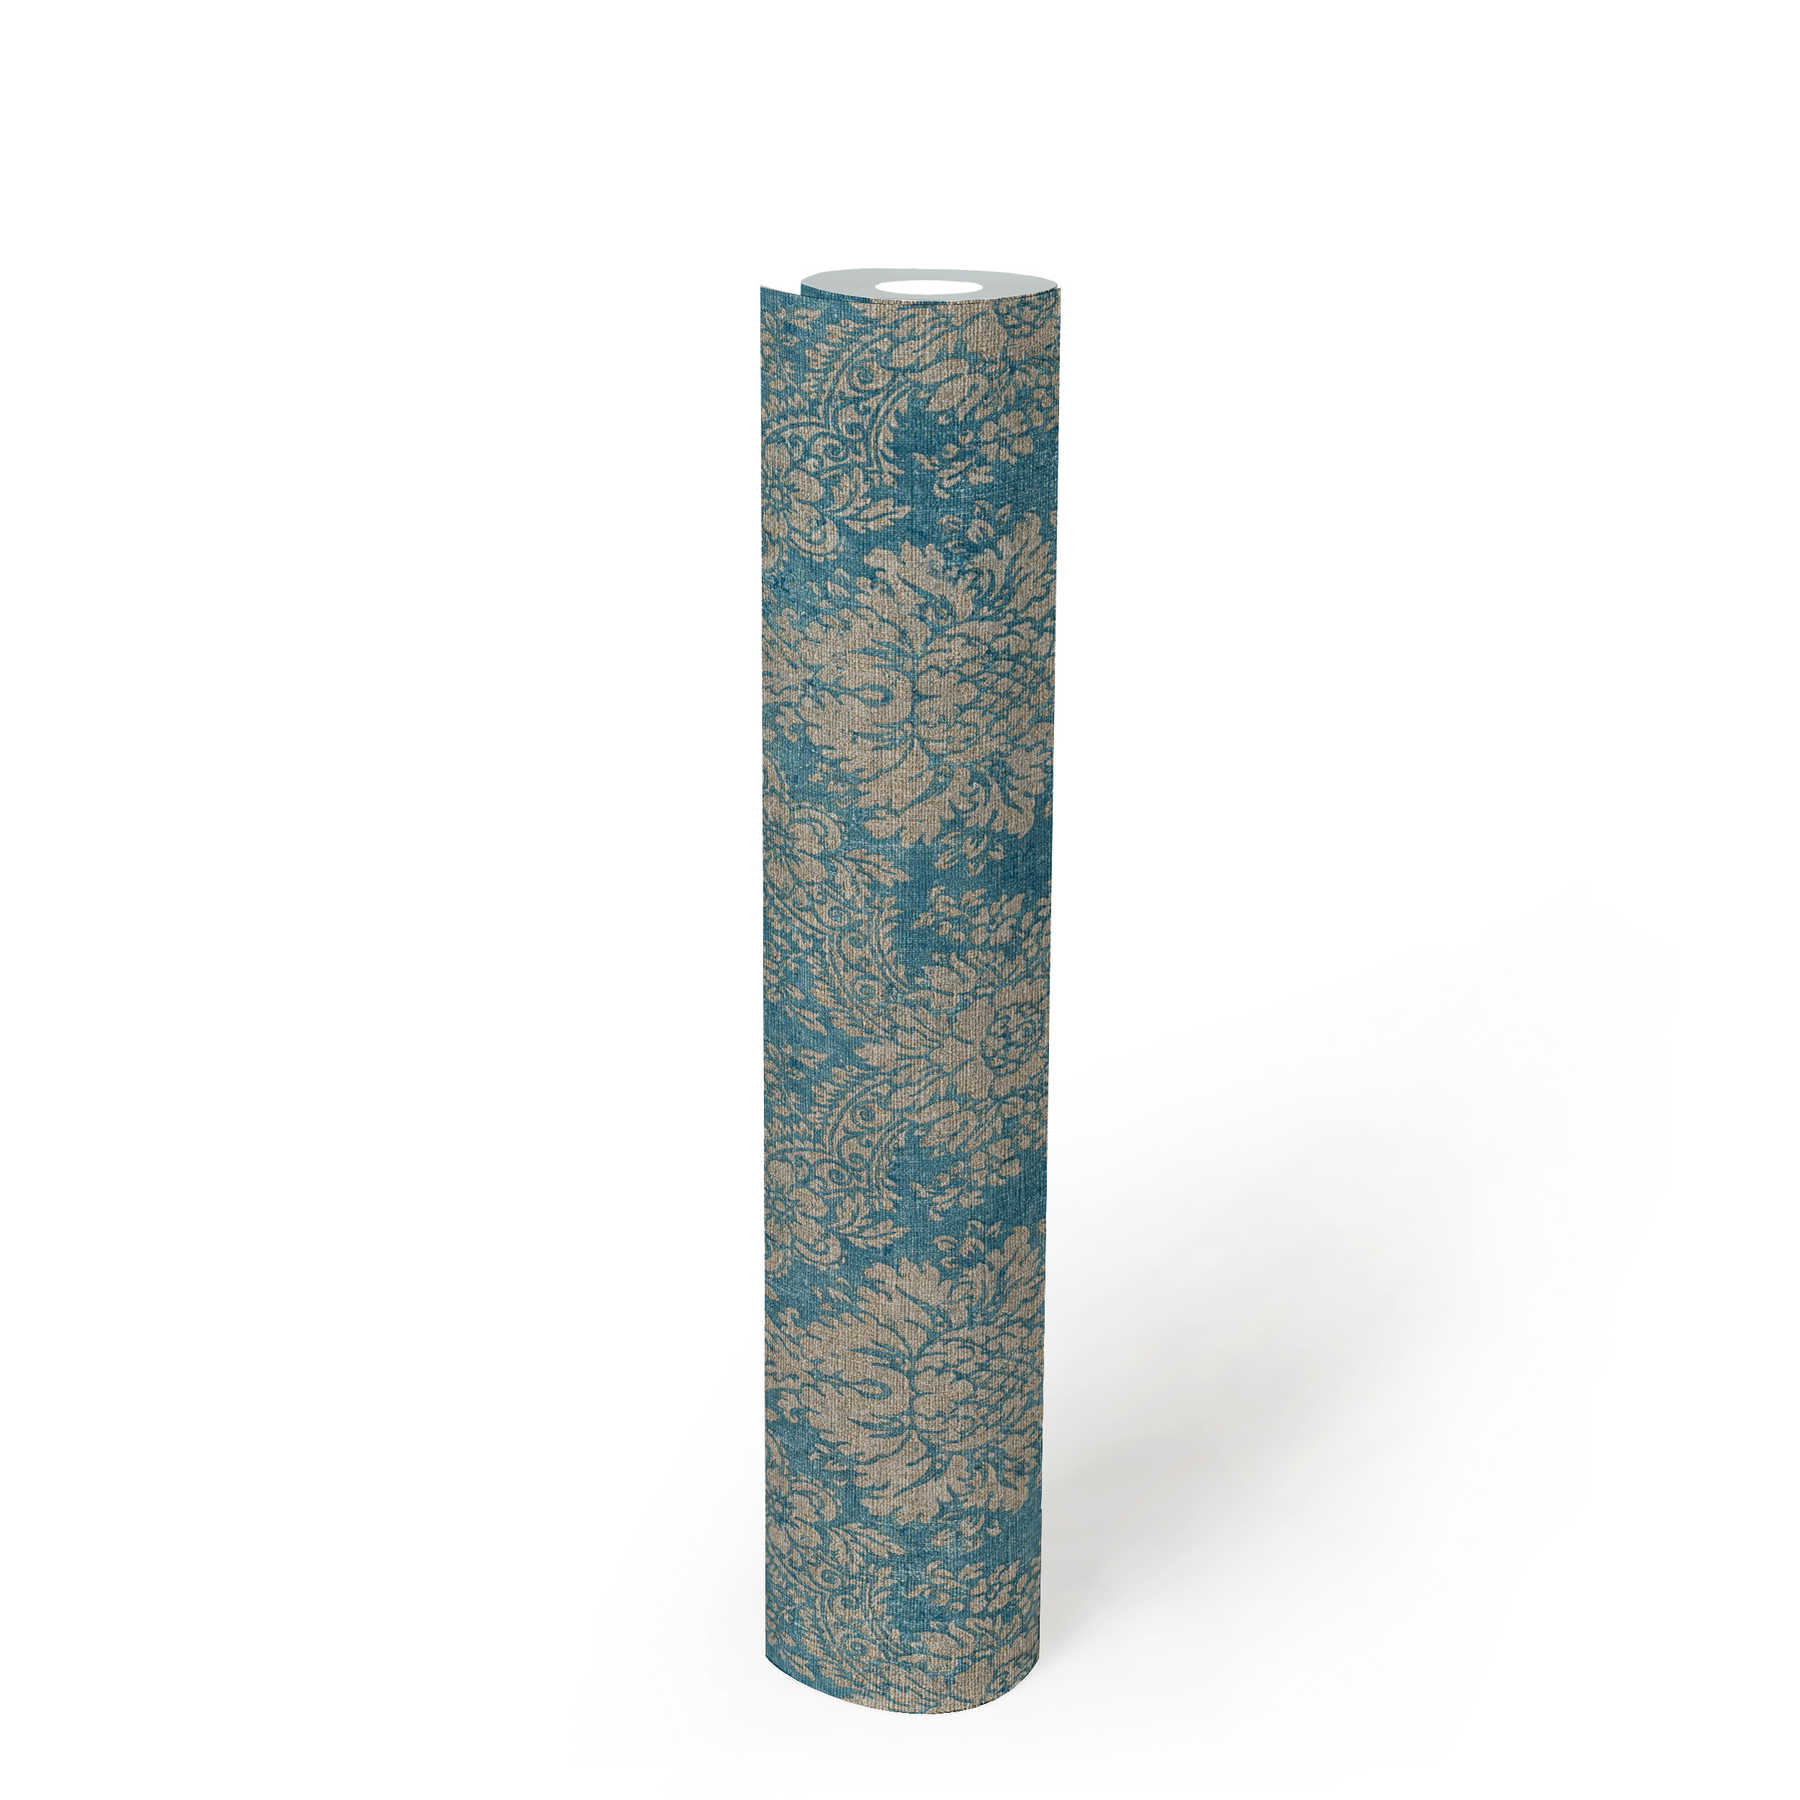             Bloemenornament behang met metallic effect & used look - blauw, bruin, metallic
        